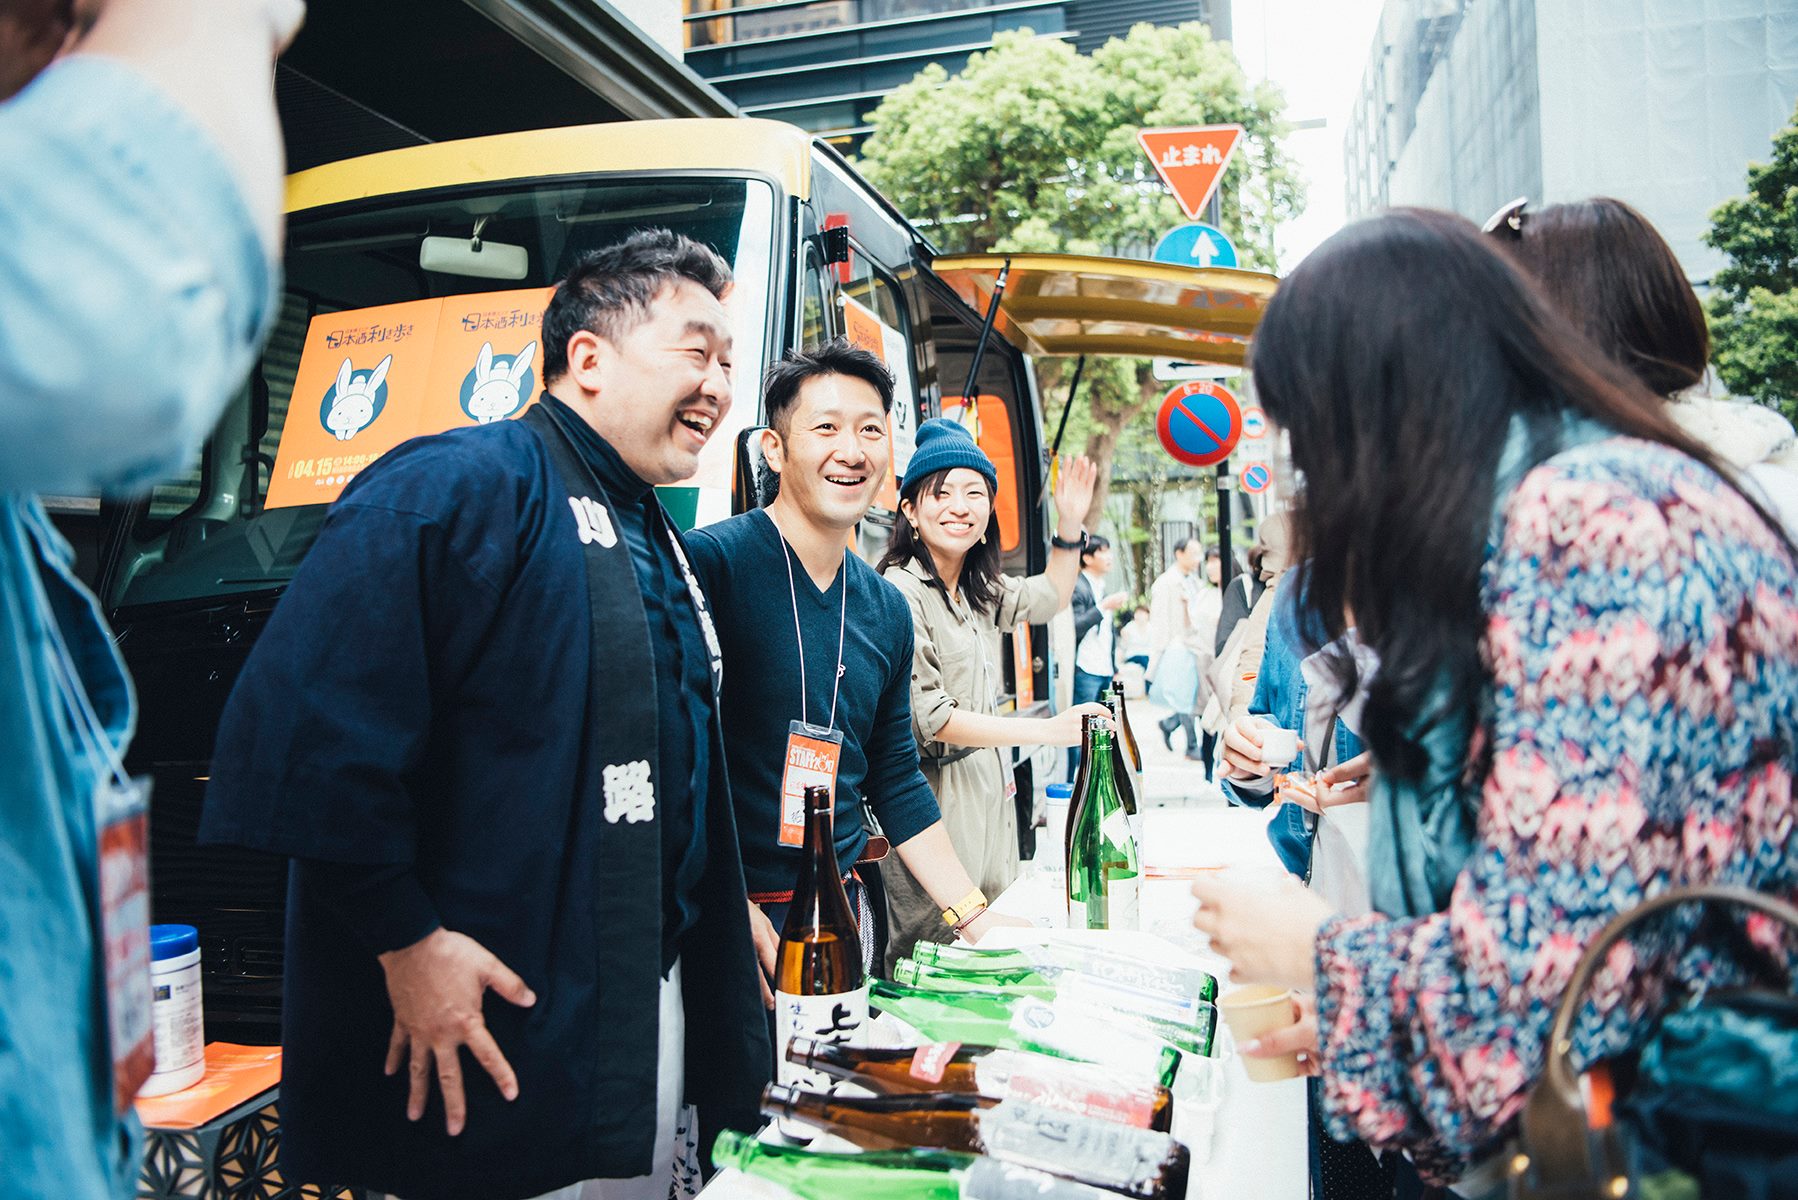 前回7500名を動員！5年ぶりに復活する日本酒イベント、東京・日本橋で開催――全国約50蔵の銘酒を堪能できる利き酒イベントが4月13日開催。フード販売、物販、イベント等、盛りだくさん。